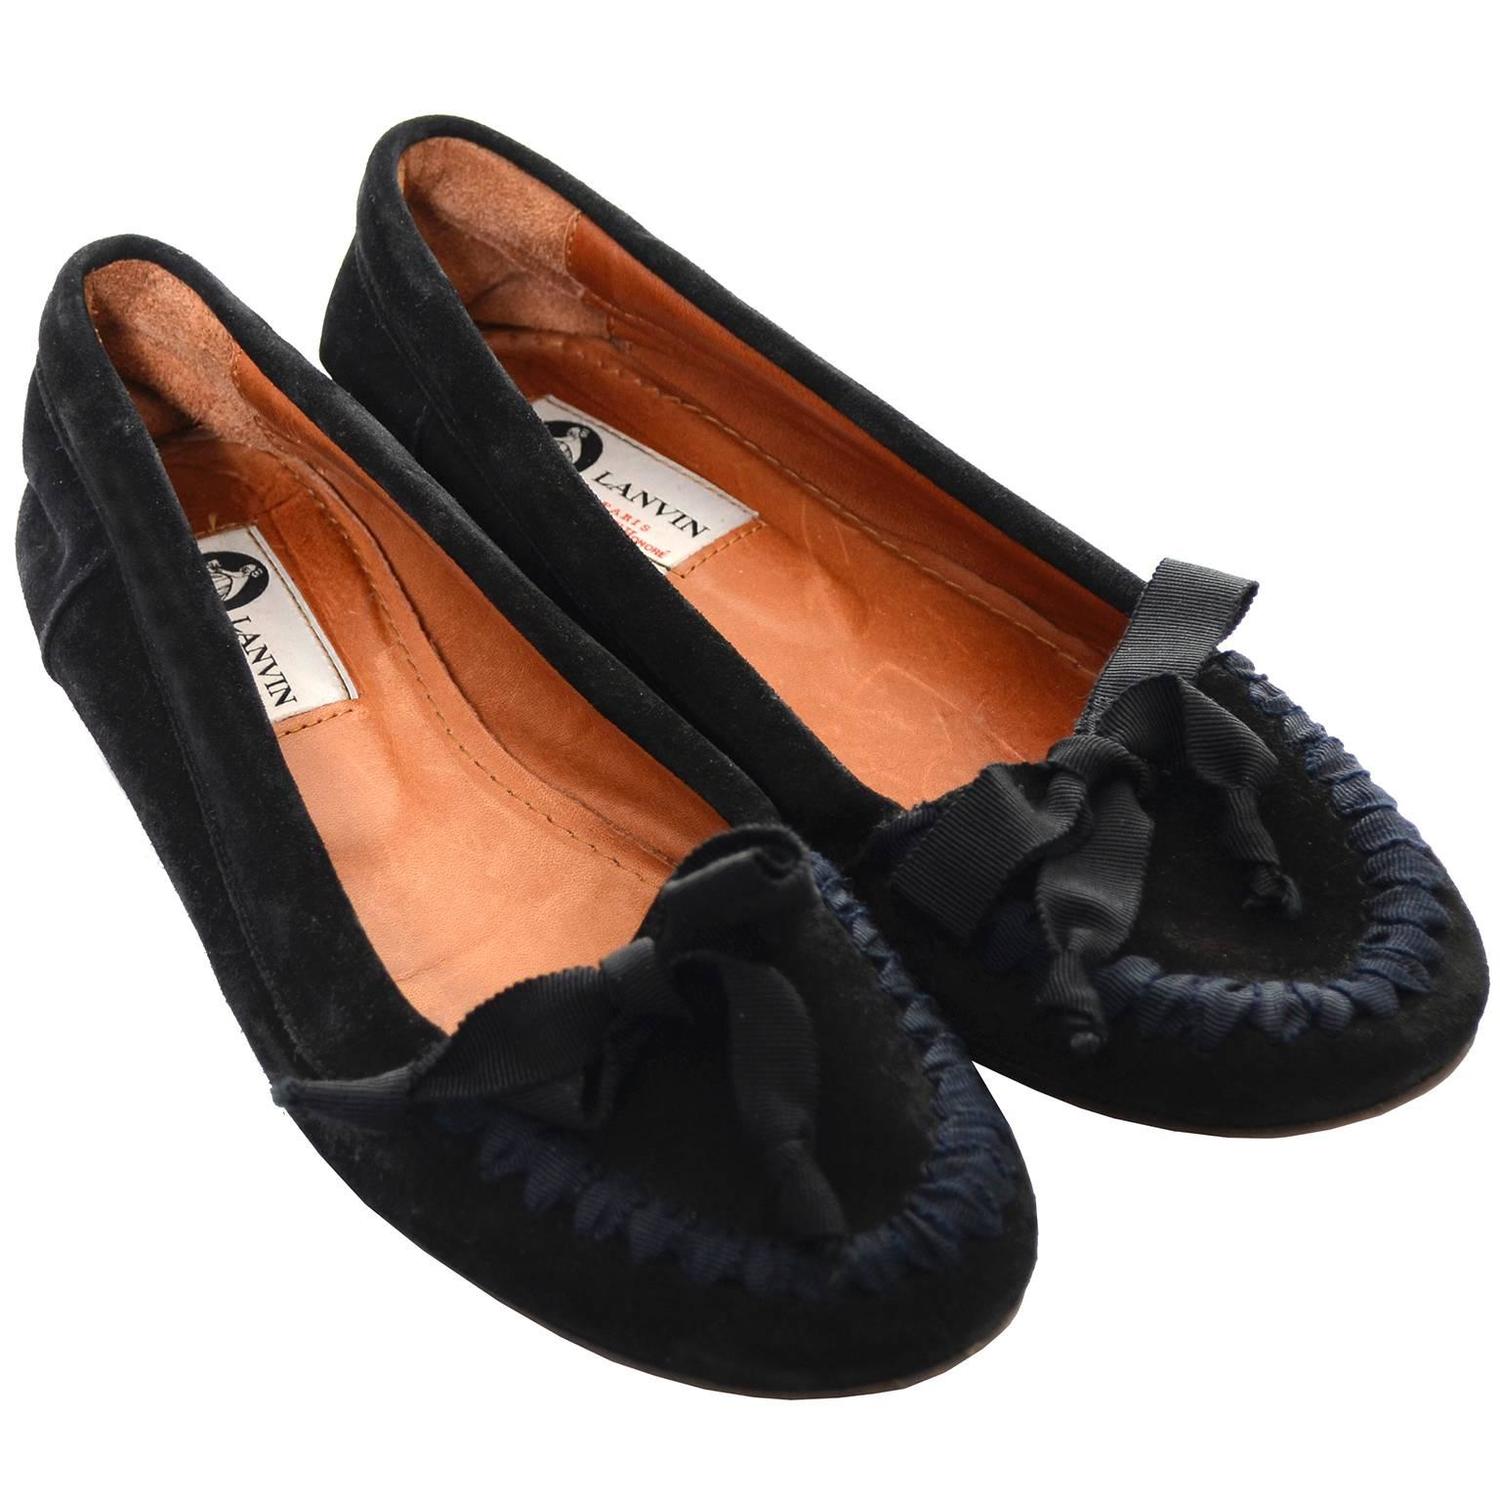 Lanvin Paris Black Suede Flats Shoes Ribbons Bows Loafers Size 38 6.5 ...